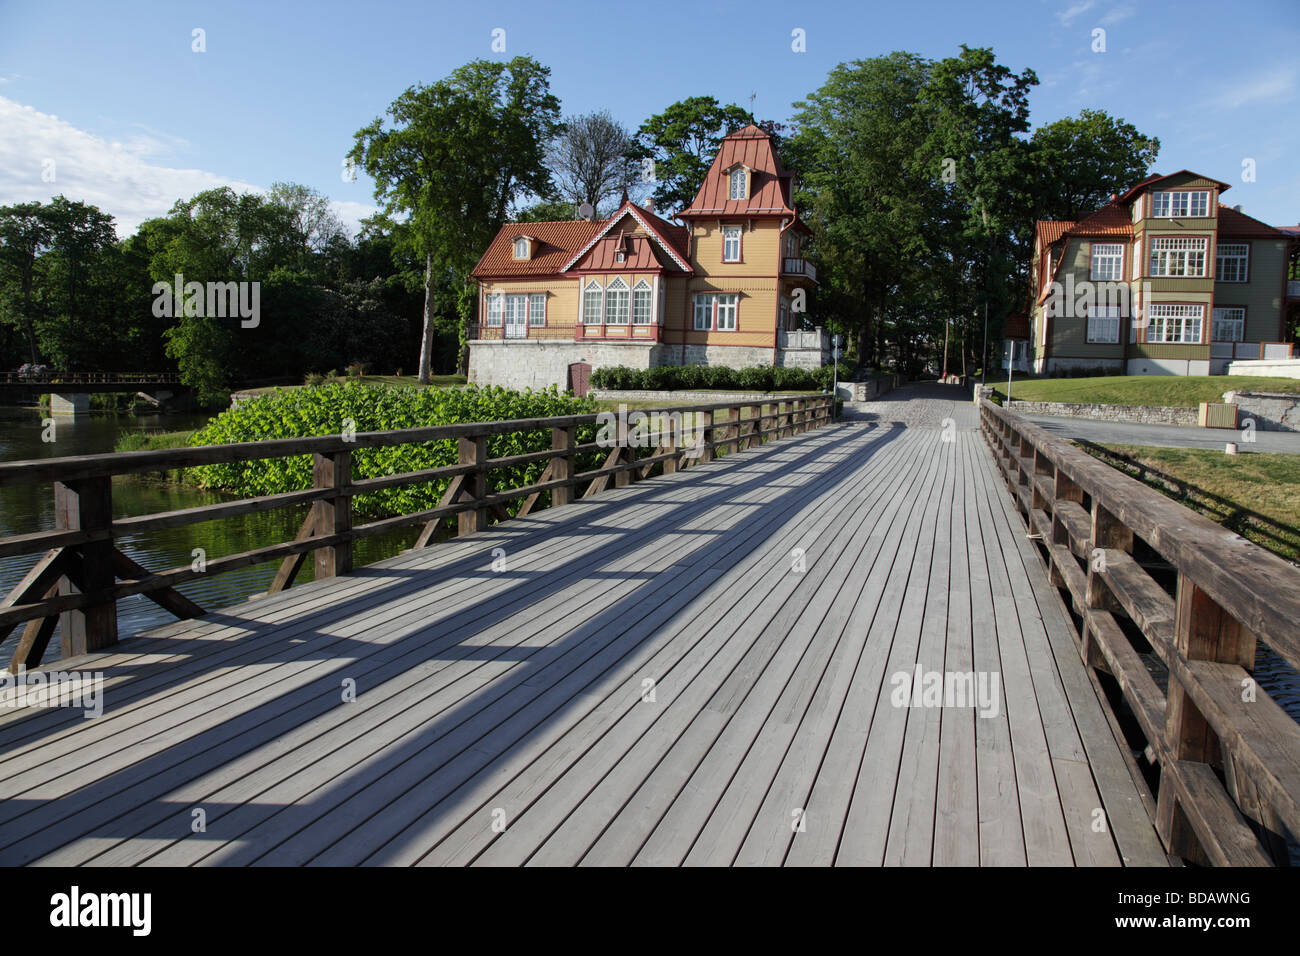 Hôtel particulier de la ville de Kuressaare park l'île de Saaremaa Estonie Etat balte orientale. Photo par Willy Matheisl Banque D'Images